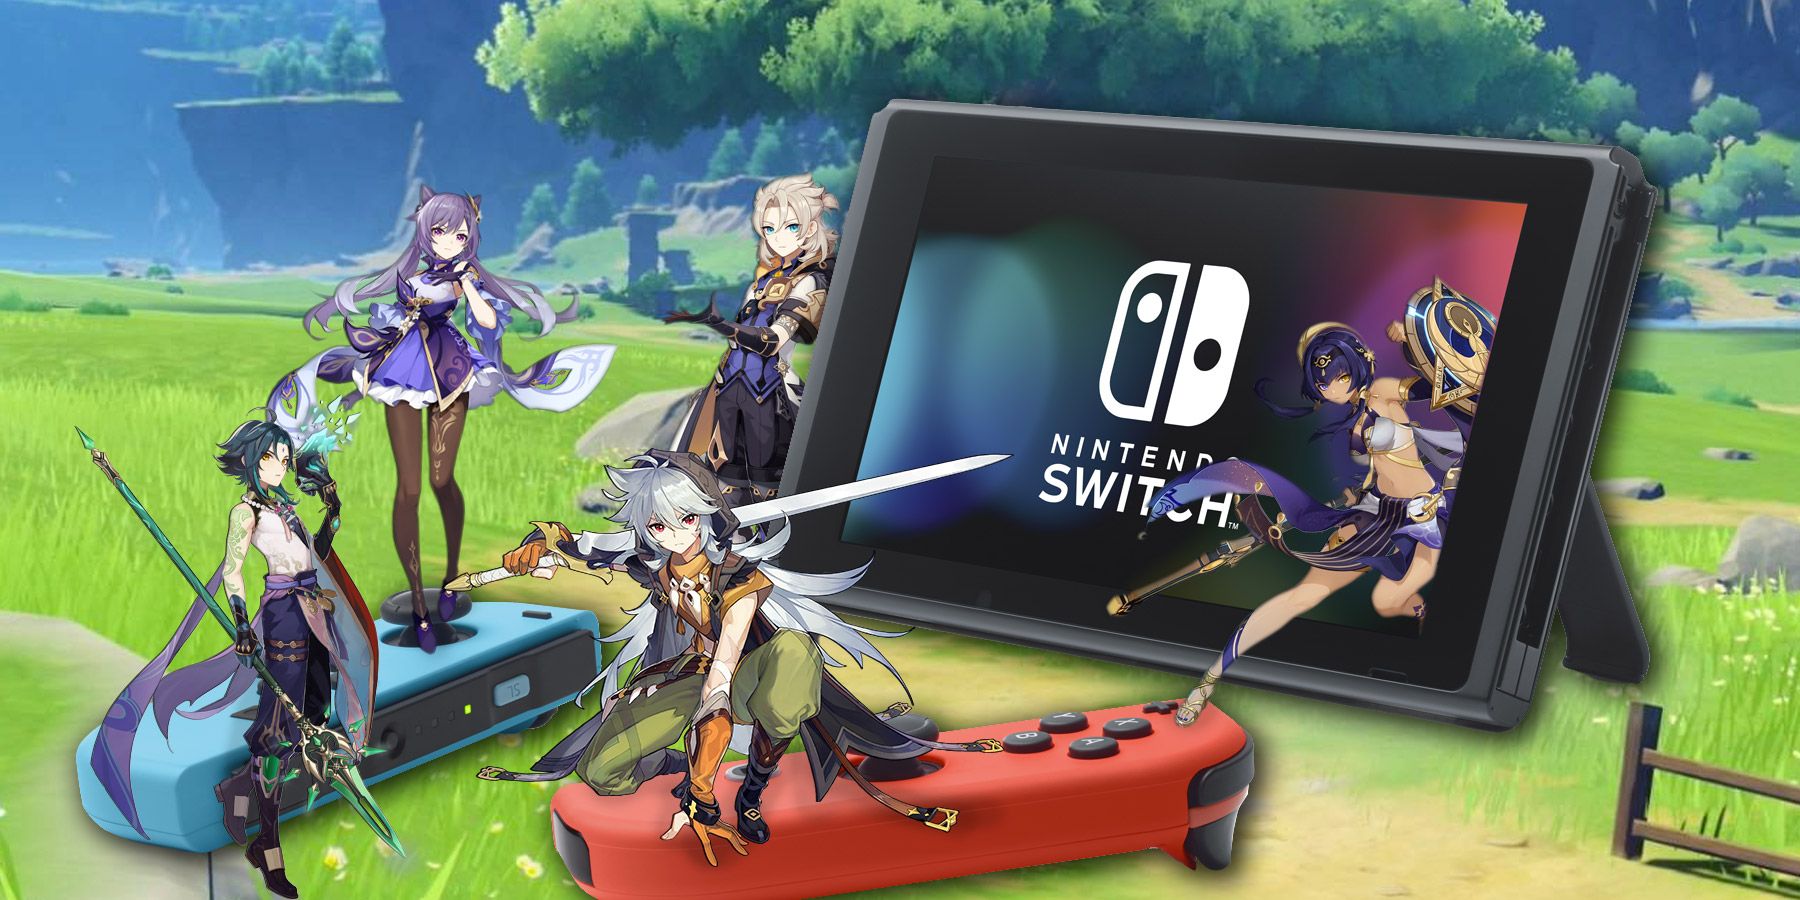 Is Genshin Impact On Nintendo Switch?